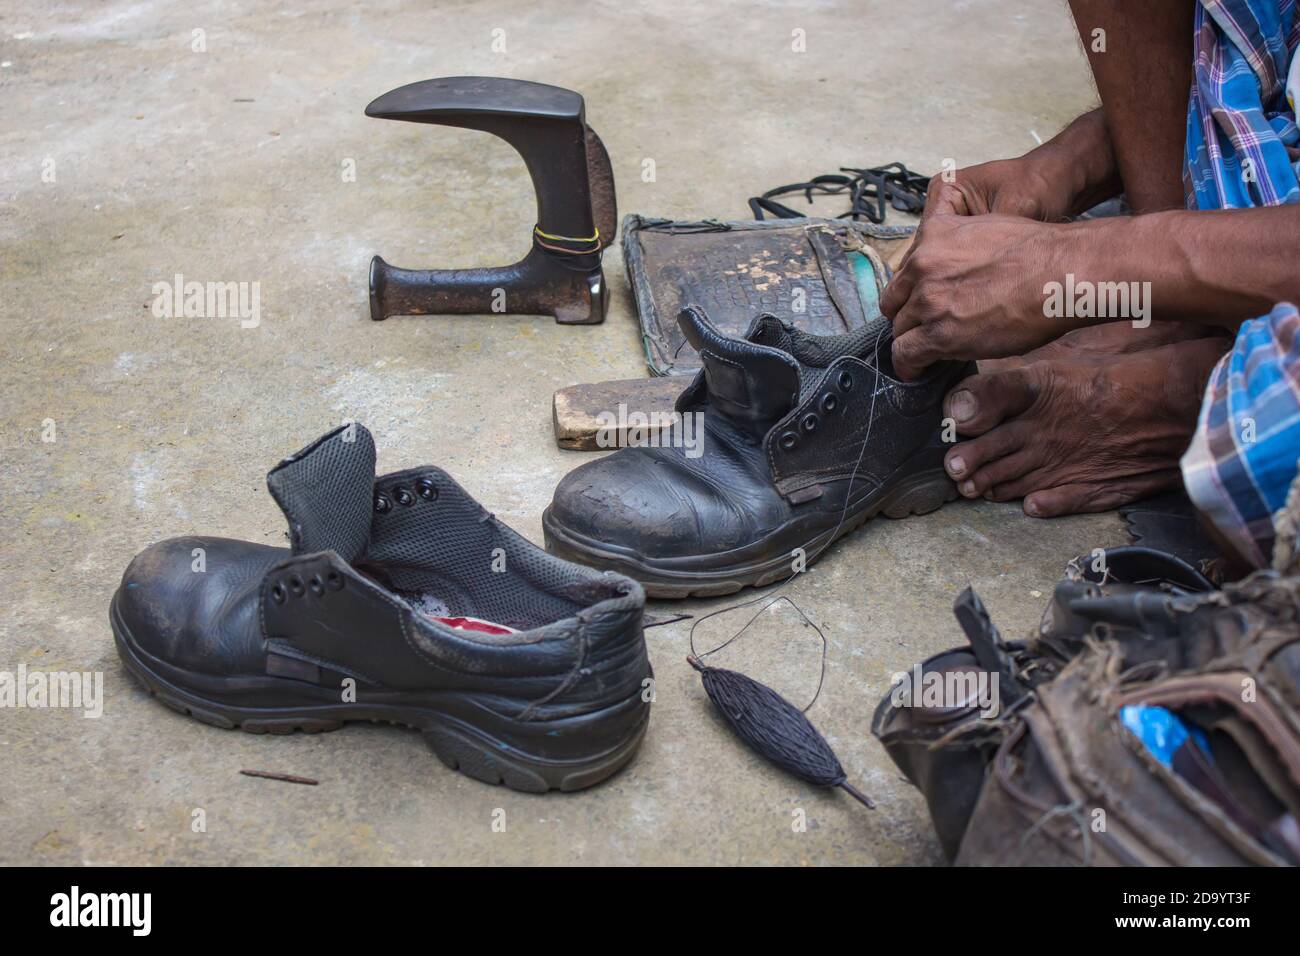 Indische lokale Schuster Reparatur Schuhe neben der Straße von Hand mit Werkzeugen in traditioneller Weise. Natürliche Schuss Darstellung der täglichen Arbeit eines regelmäßigen Schuster. Stockfoto